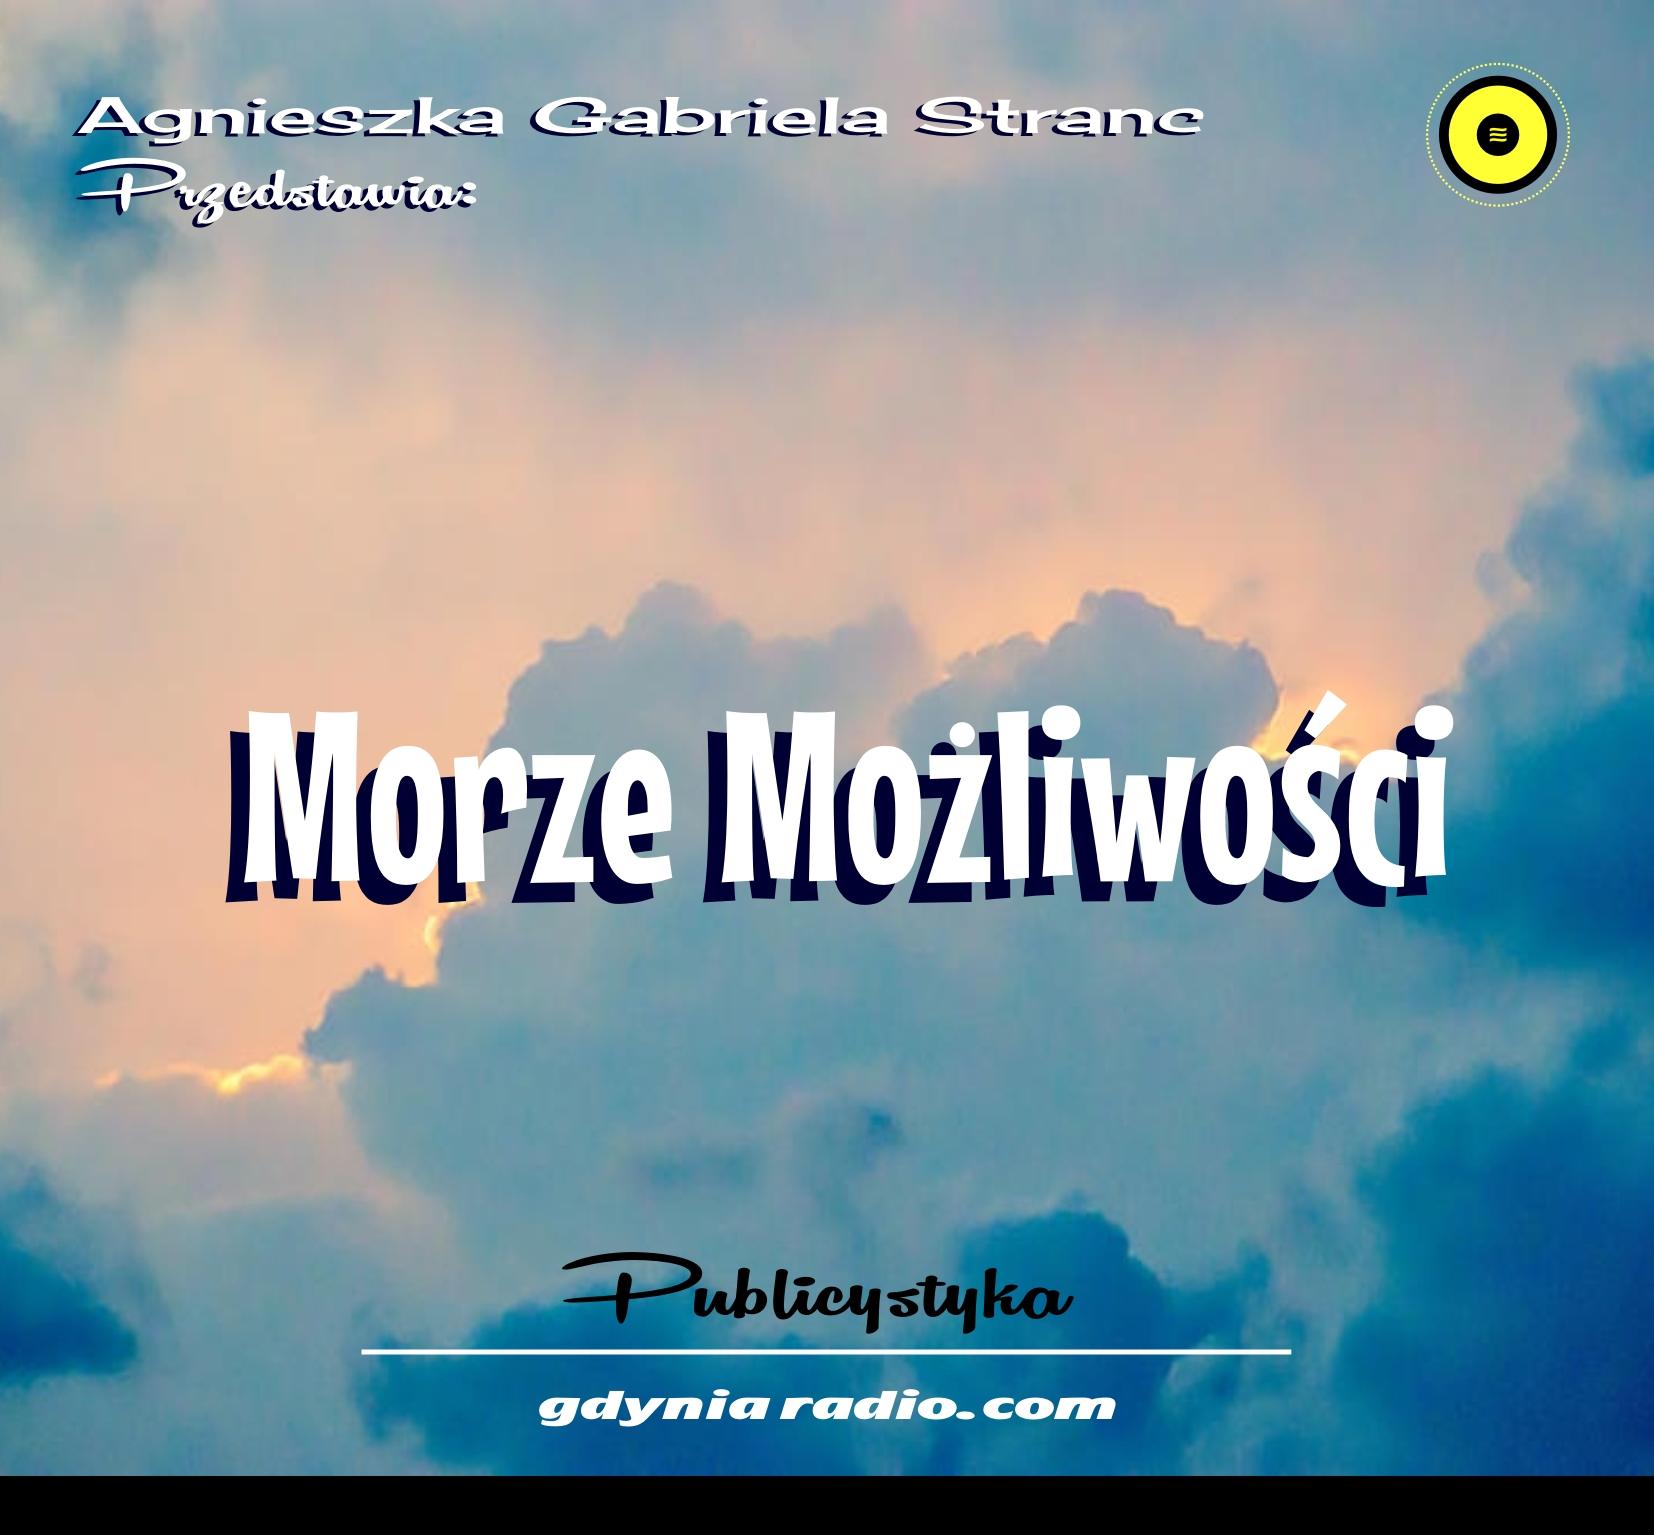 Gdynia Radio 2021 Moze mozliwosci 5 Agnieszka Stranc zzz Home Copy 2022 01 20